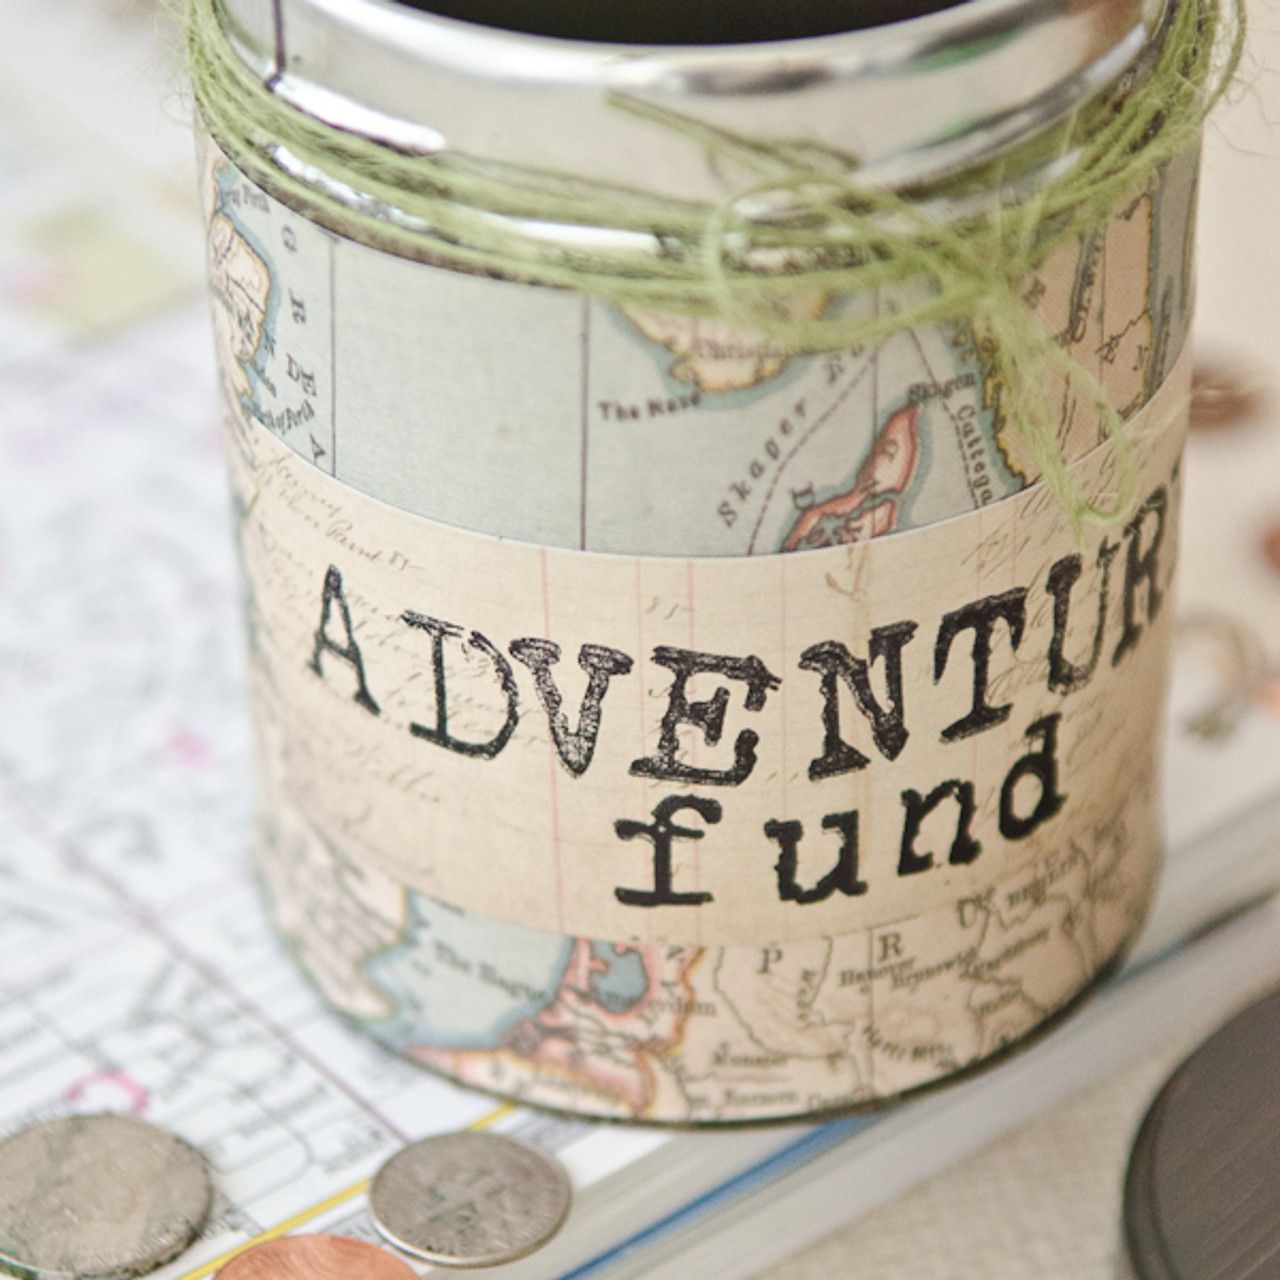 Adventure Fund